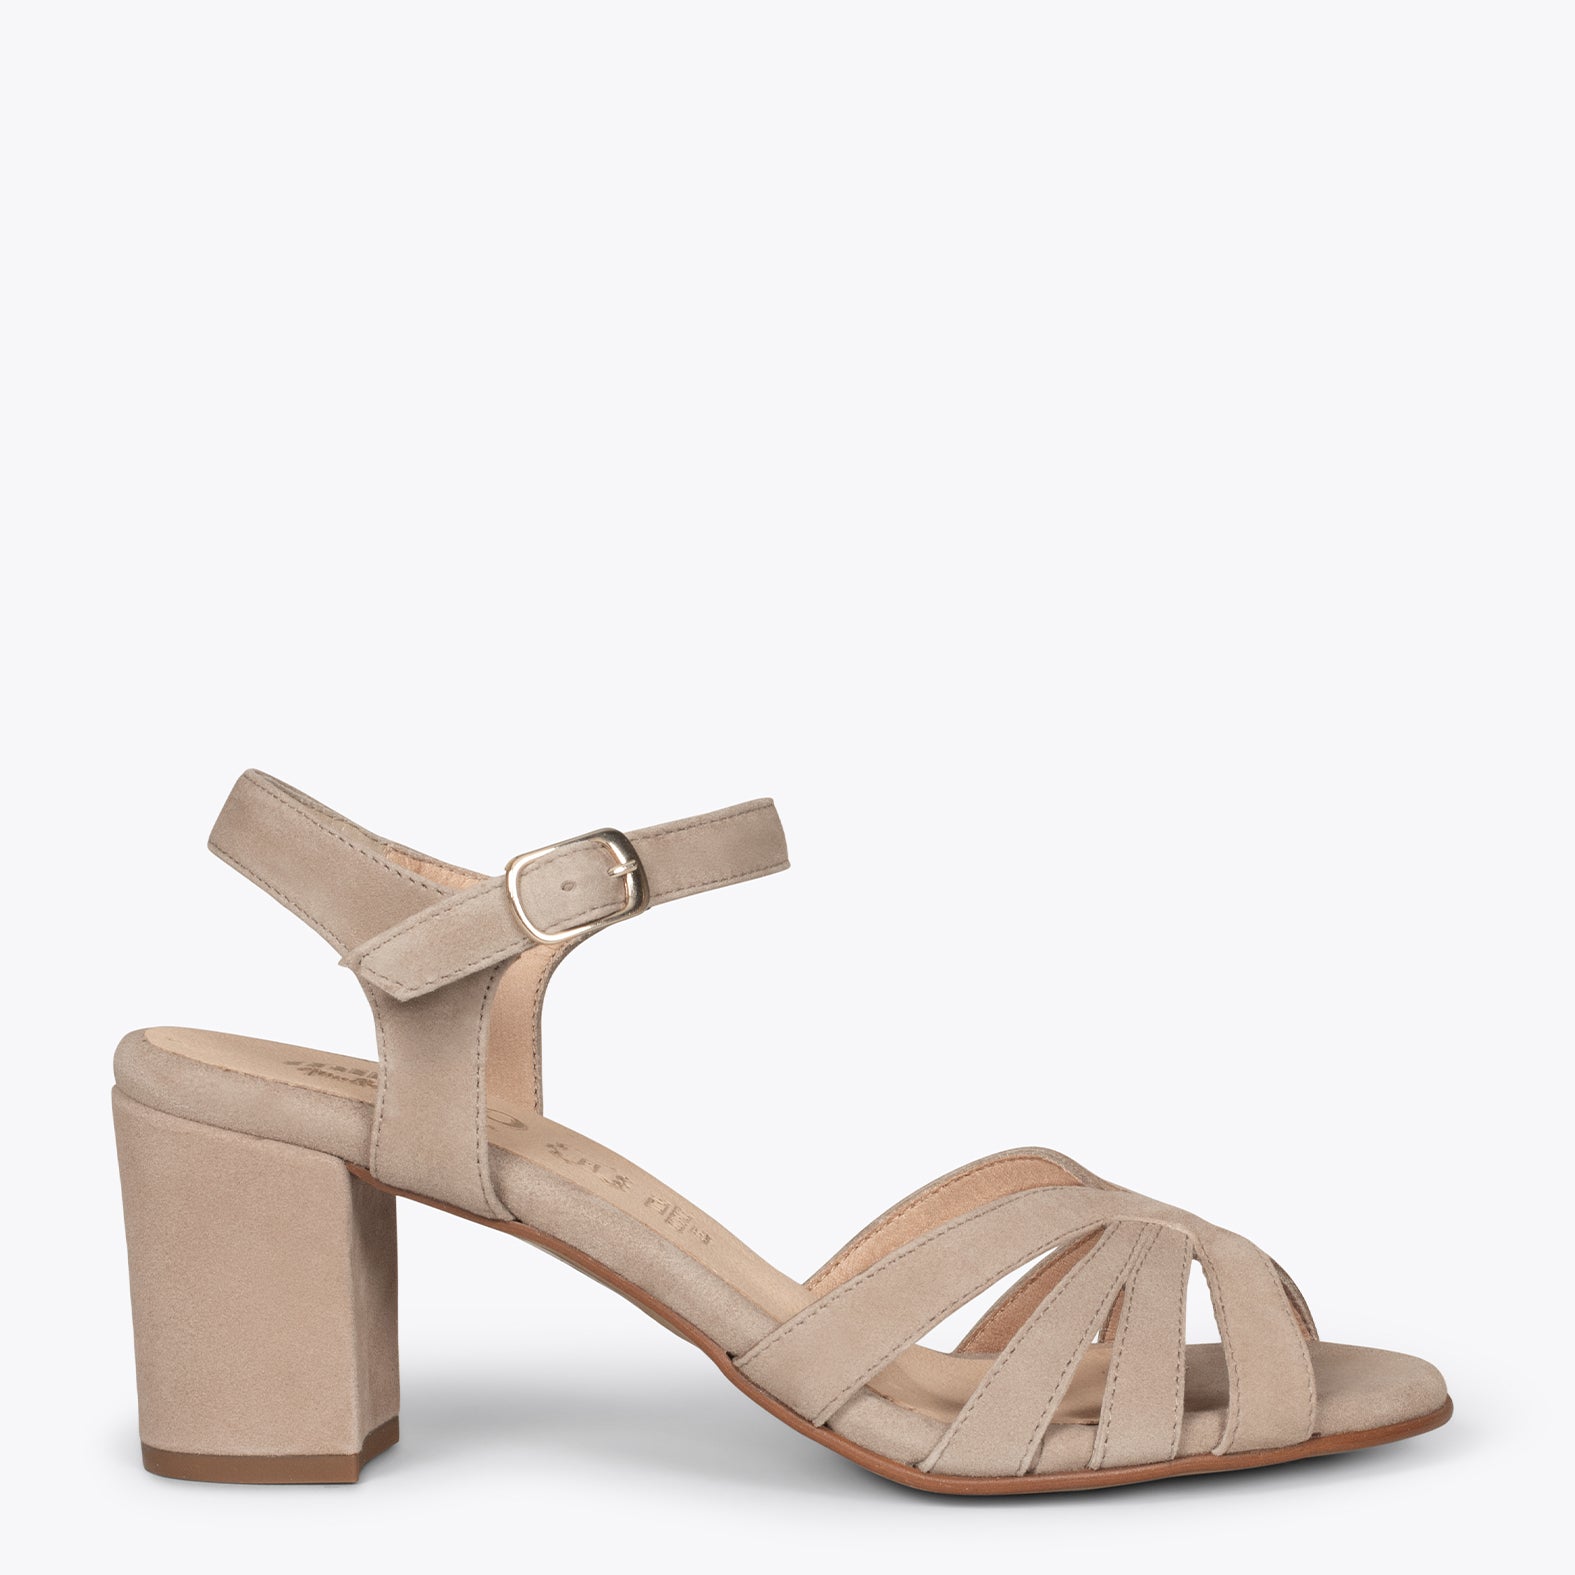 MUSE – BEIGE block heel sandals